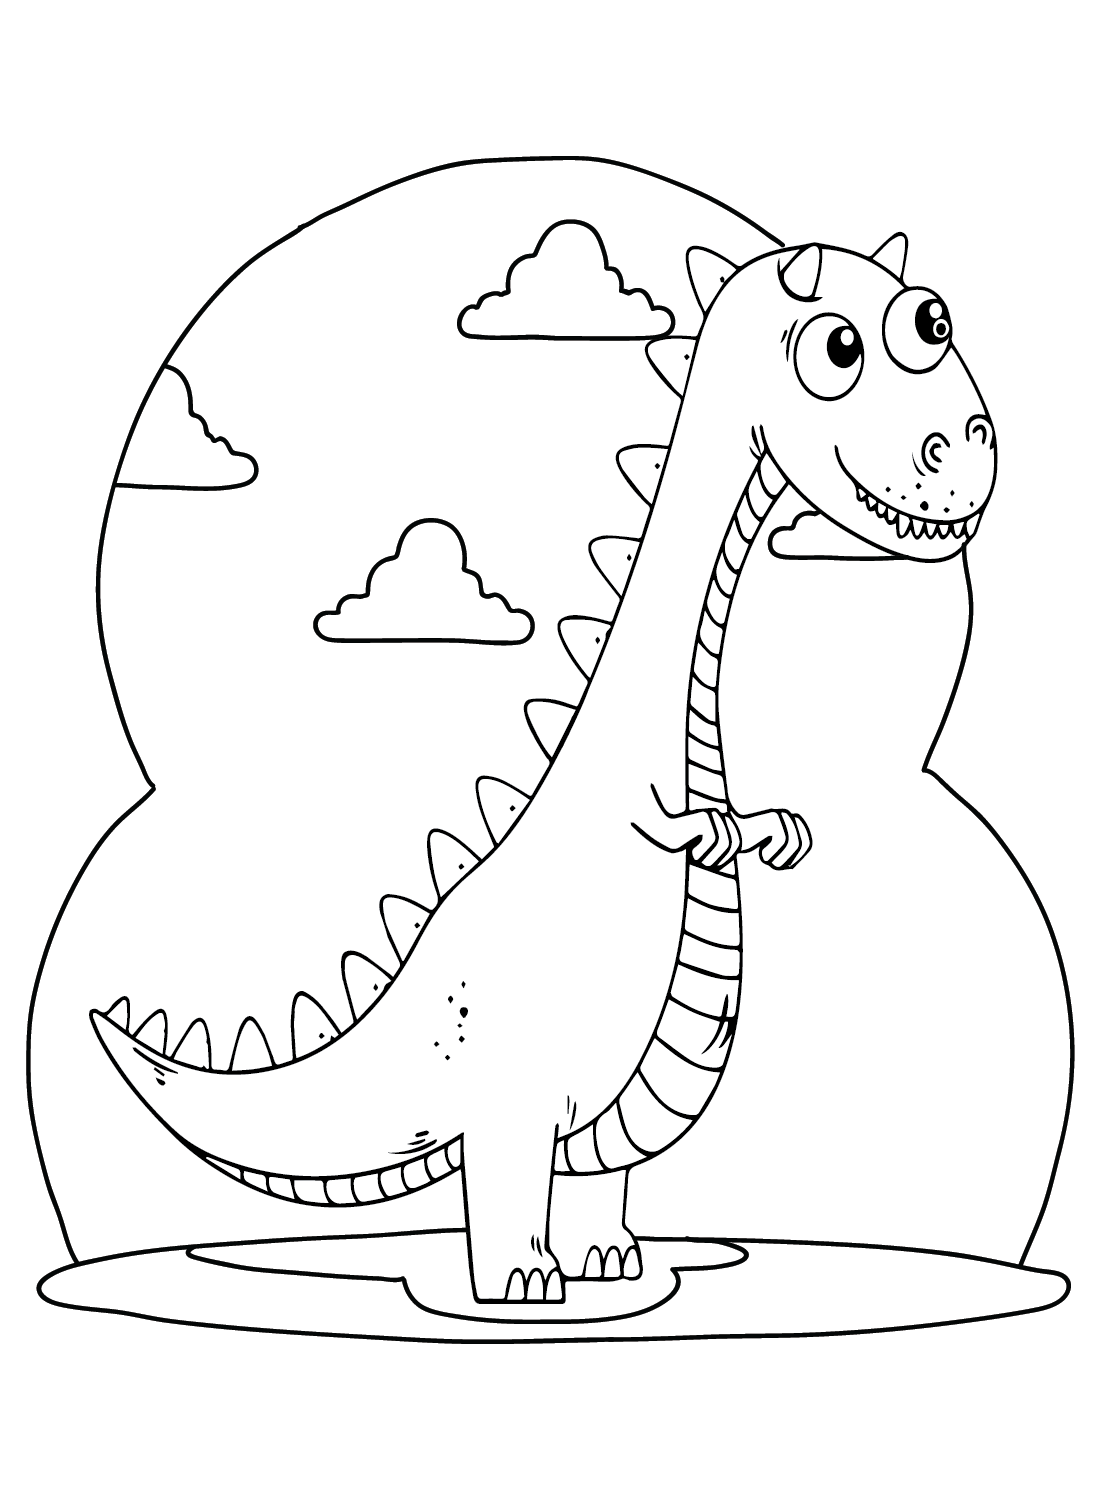 Carnotaurus-Cartoon-Malvorlagen von Carnotaurus